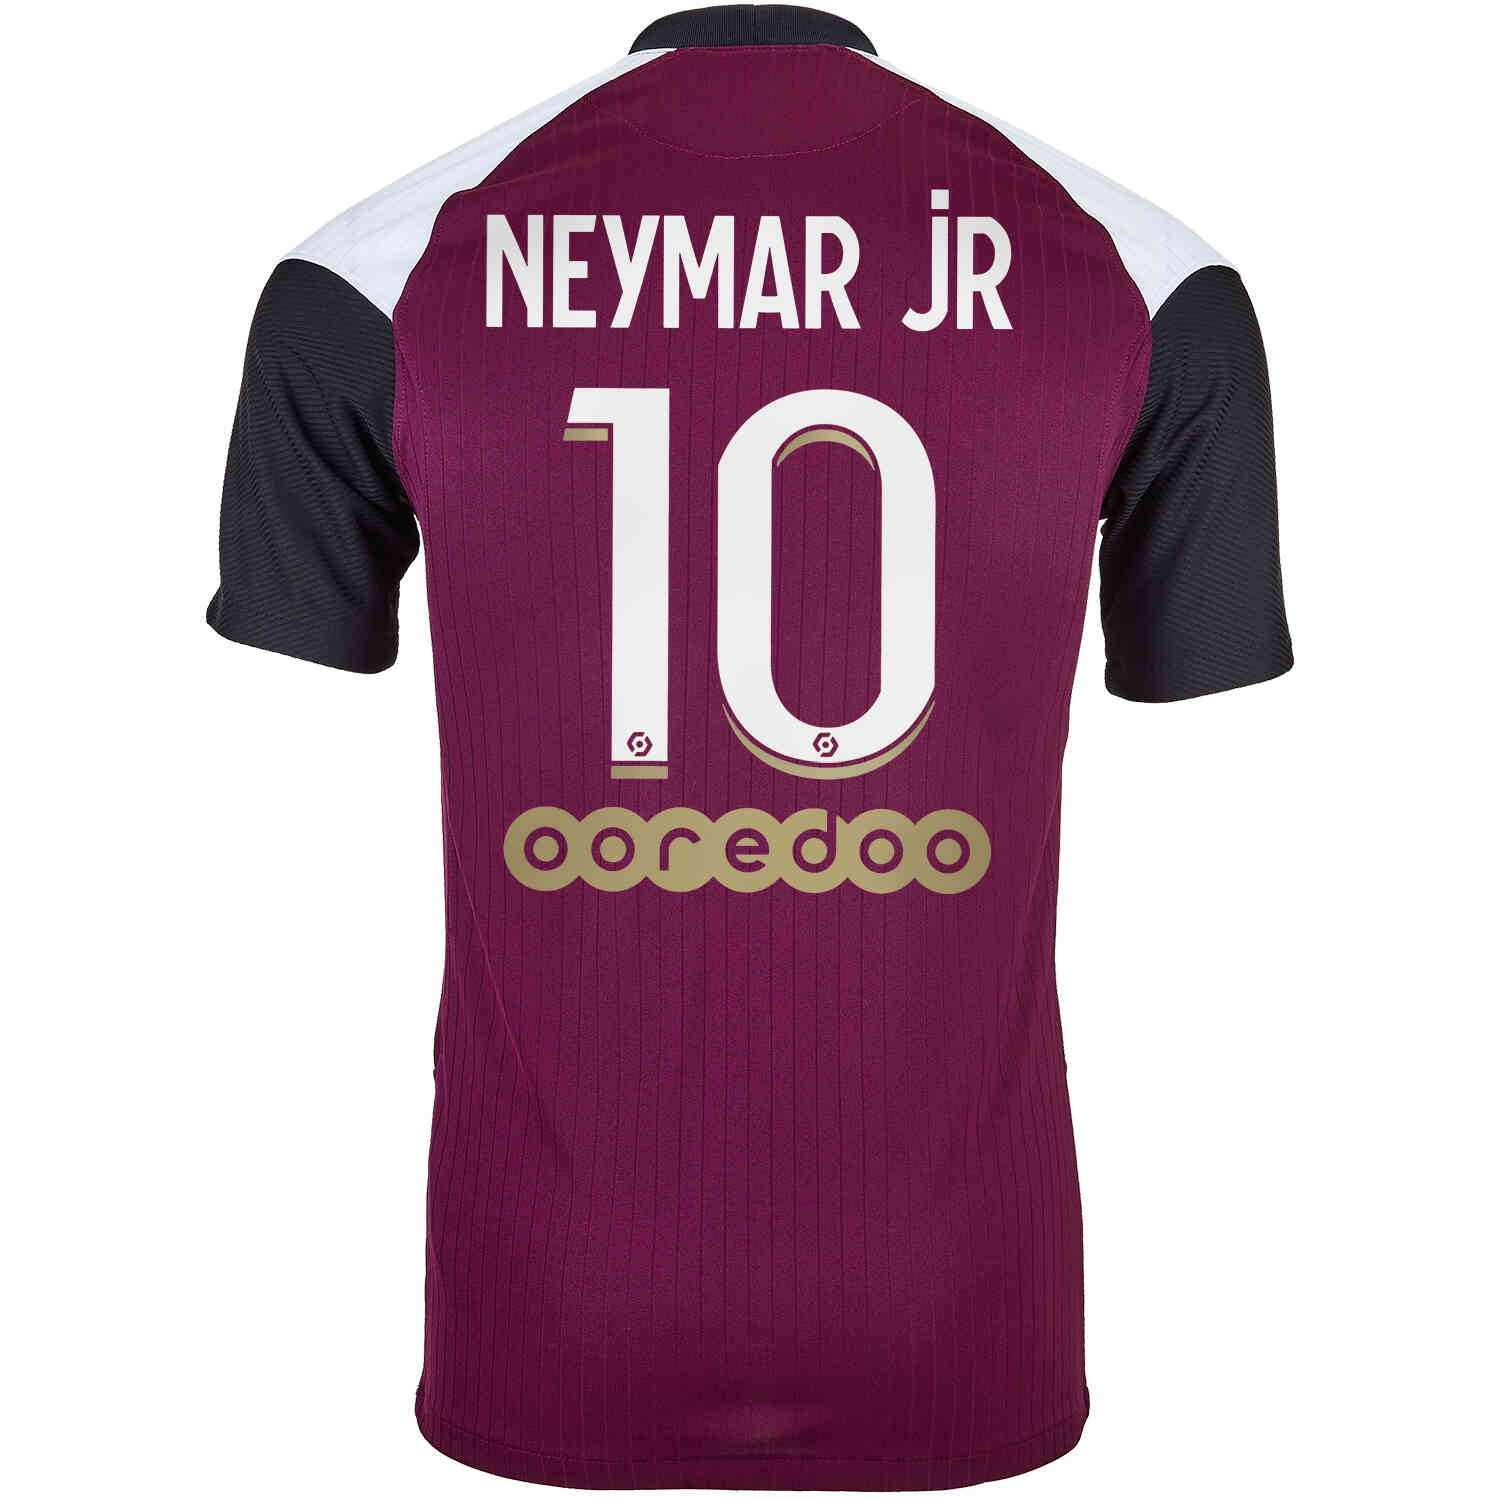 2020/21 Nike Neymar Jr PSG 3rd Jersey  SoccerPro